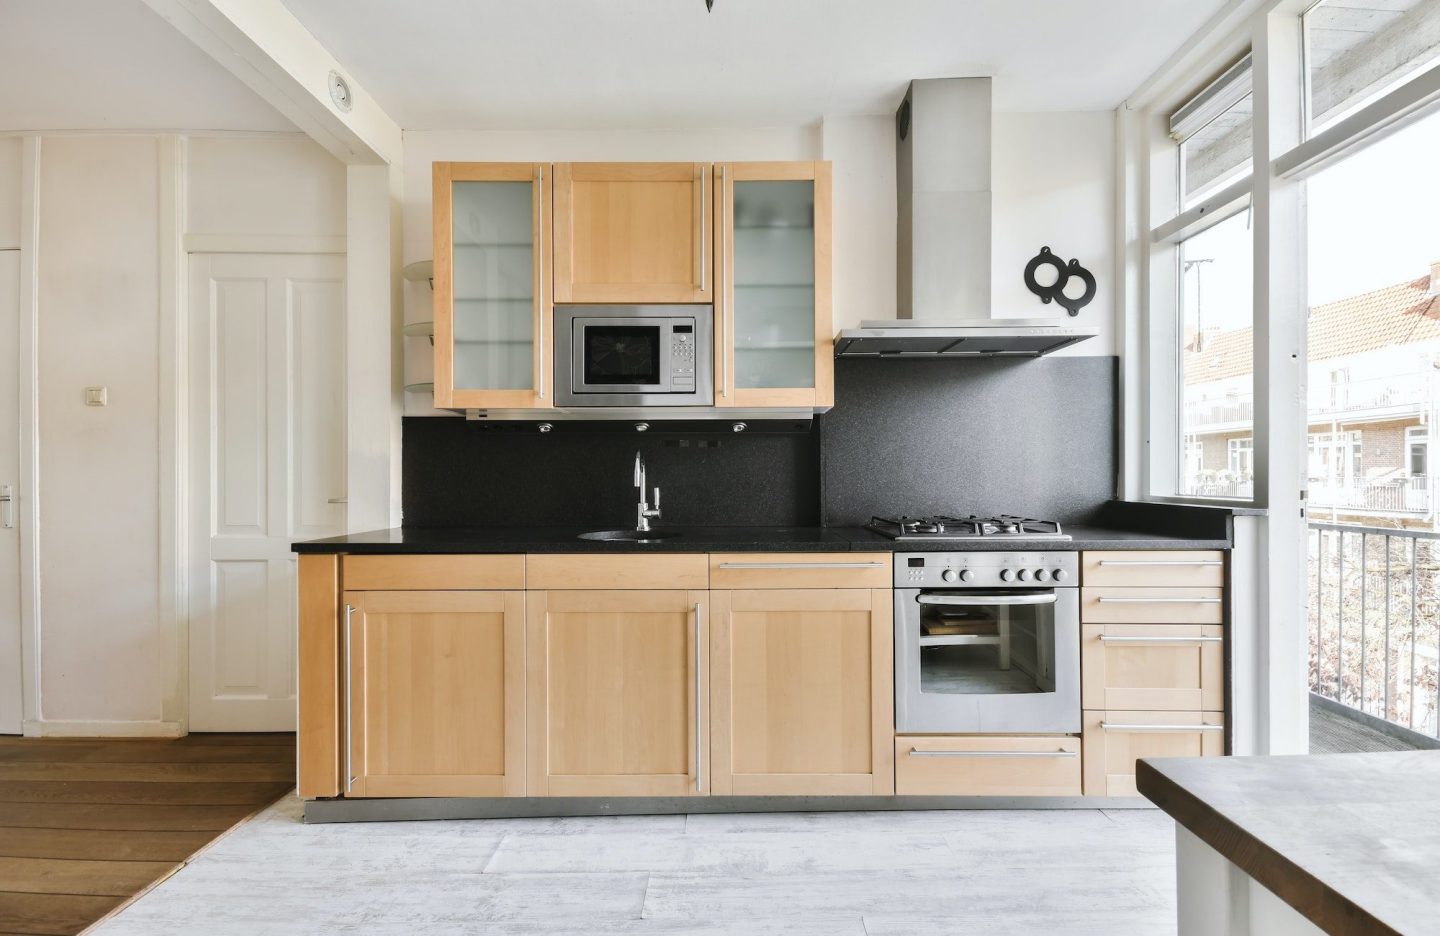 Mind-blowing stylish kitchen with wood kitchen unit